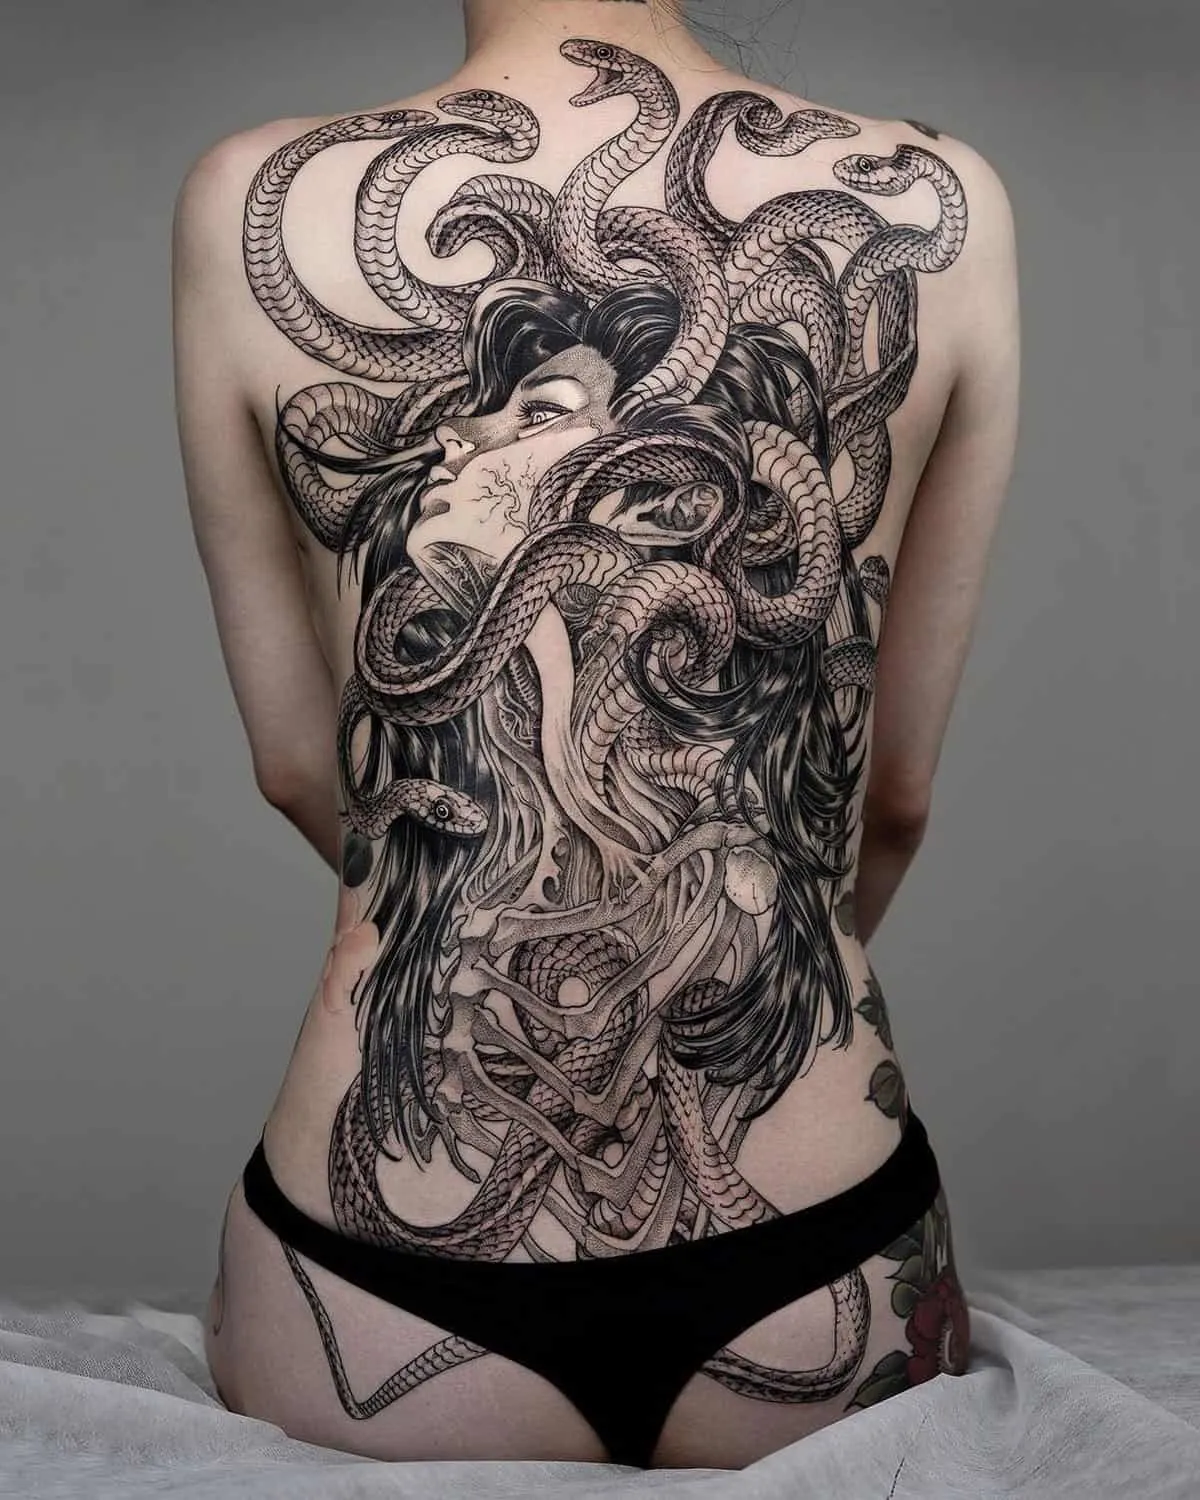 Medusa full-back tattoo